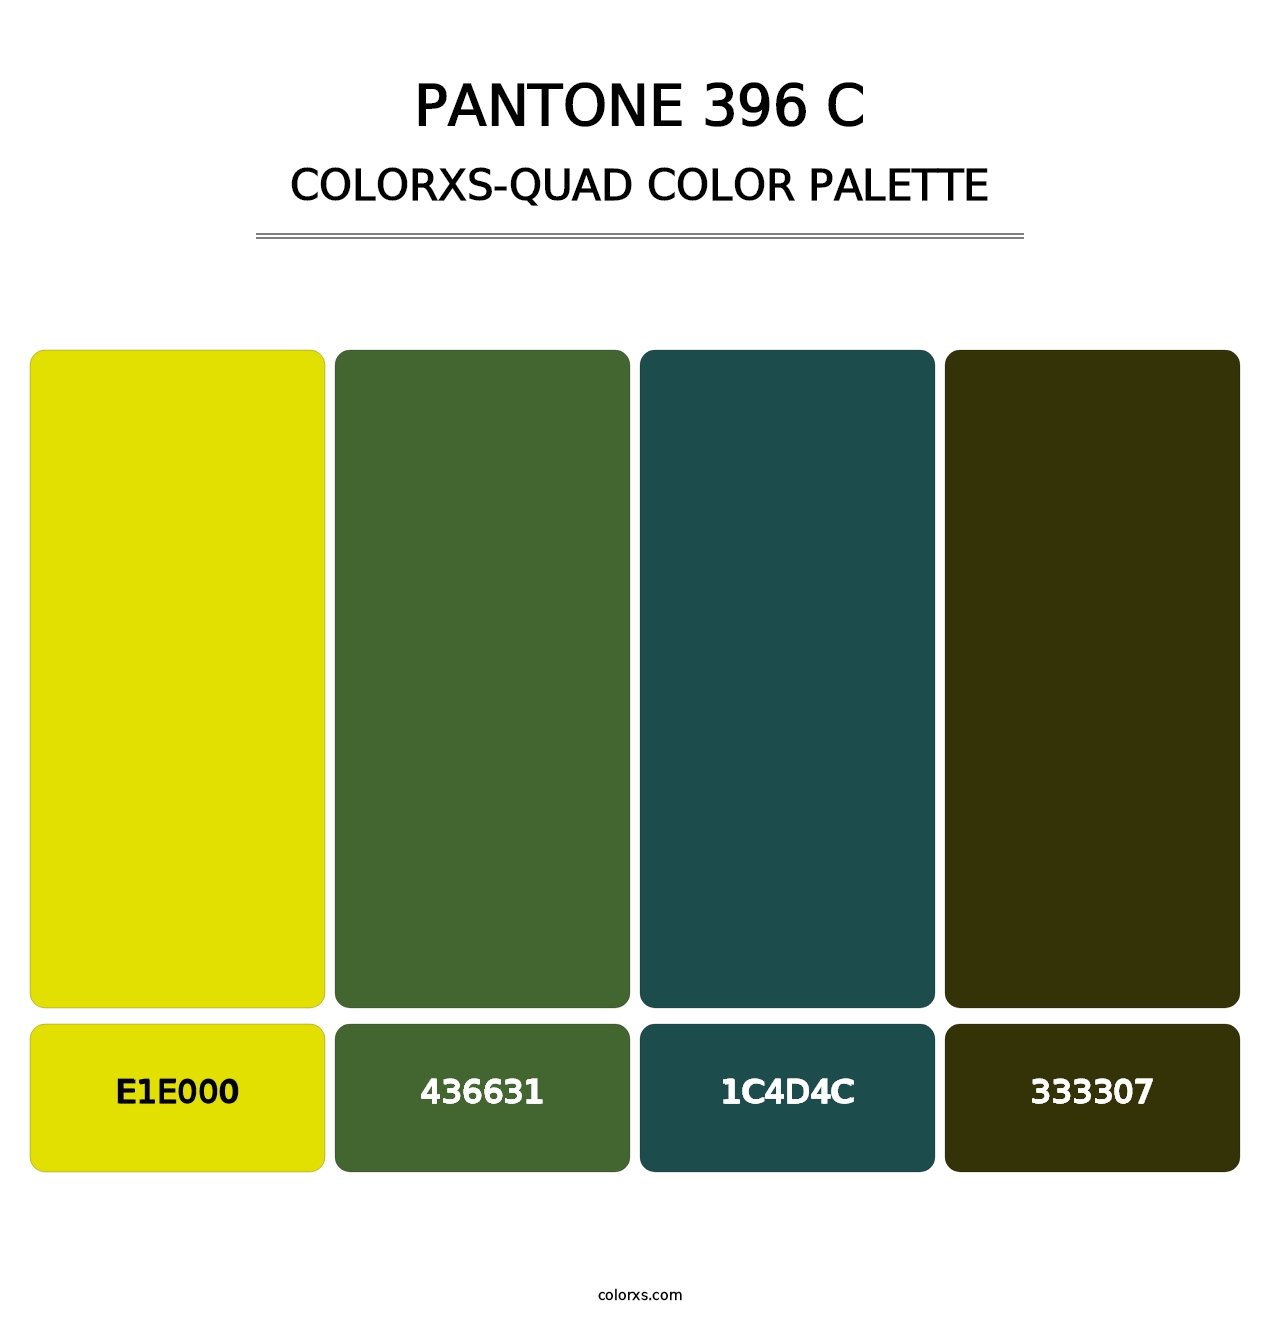 PANTONE 396 C - Colorxs Quad Palette